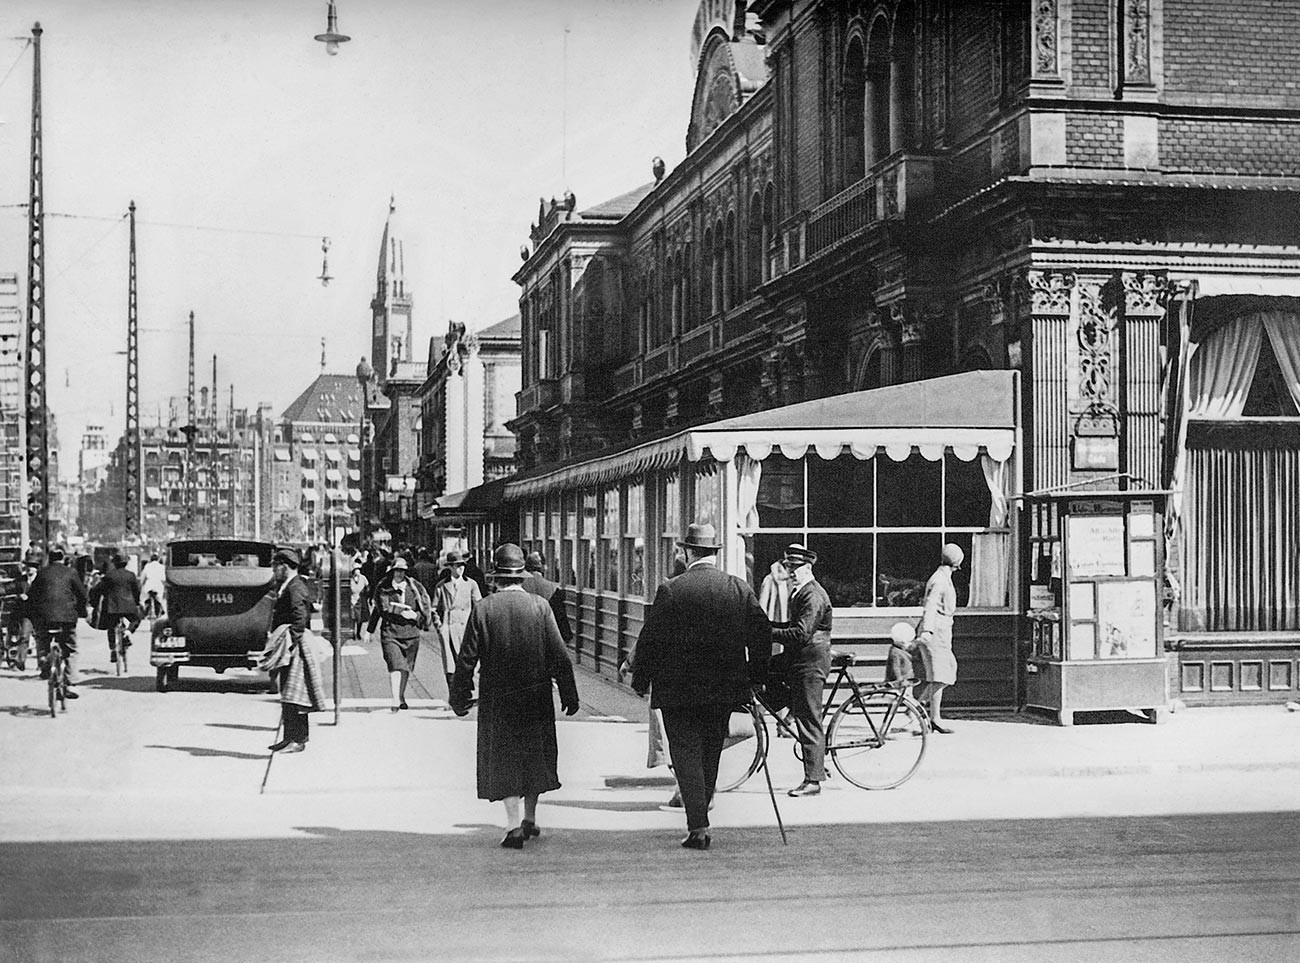 Prometna ulica v Kopenhagnu, 1931